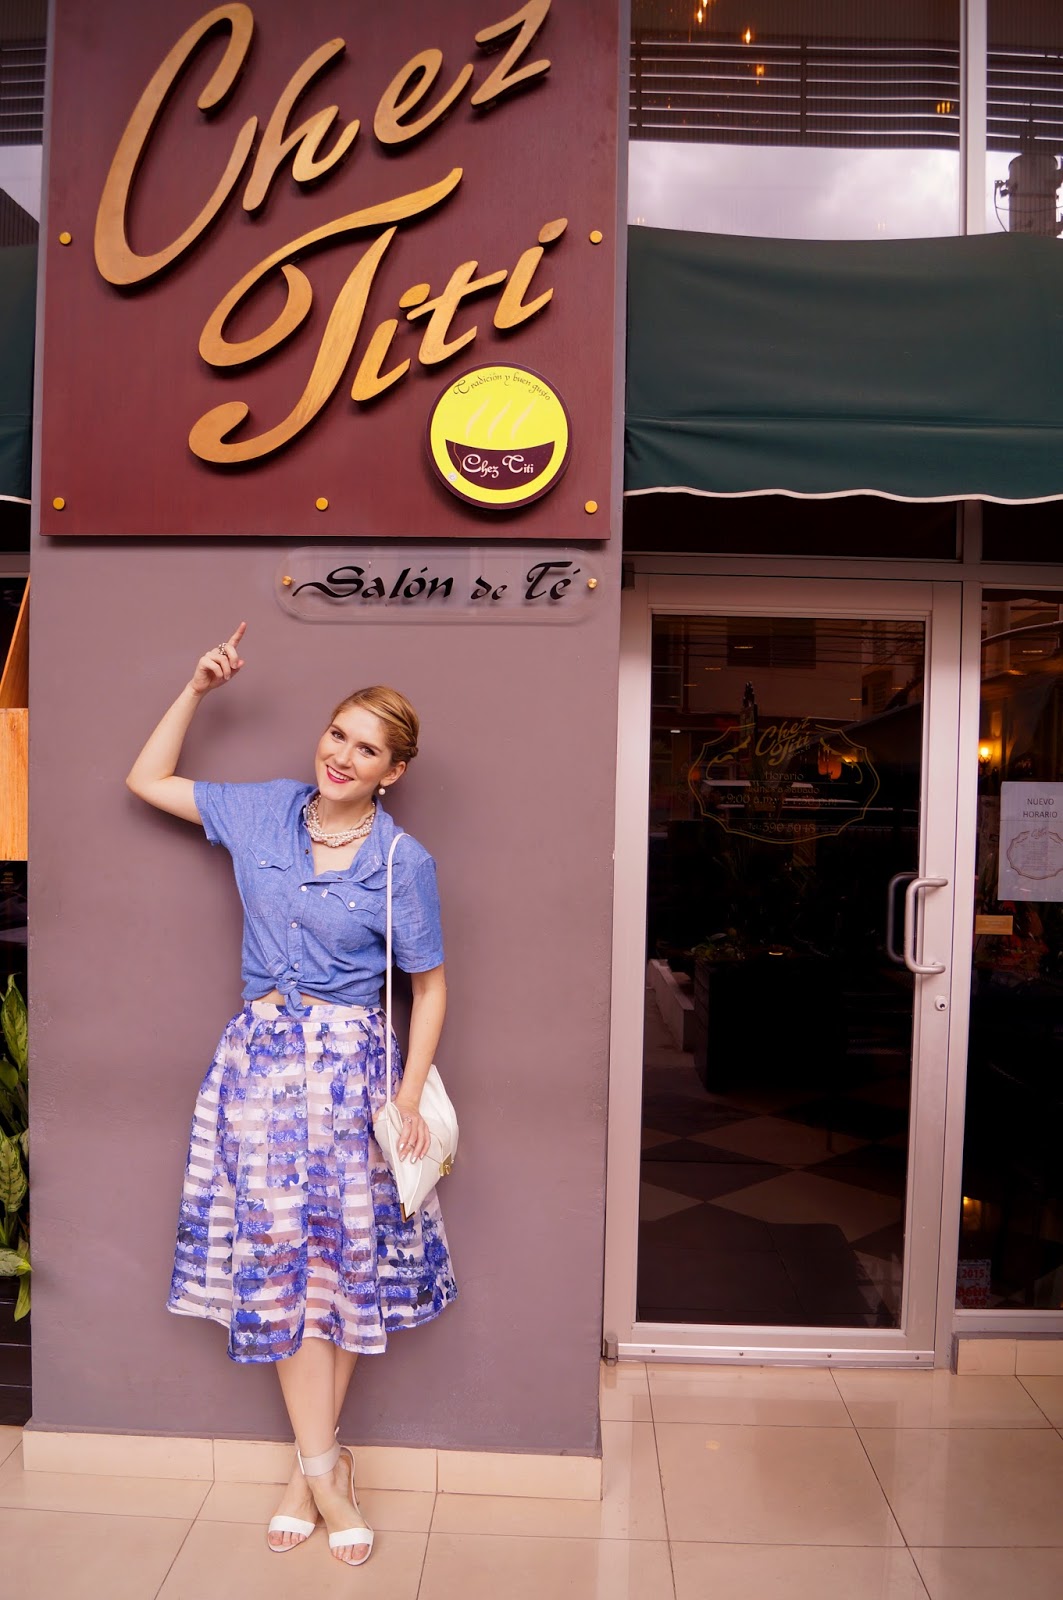 Chez Titi Restaurant in Panama